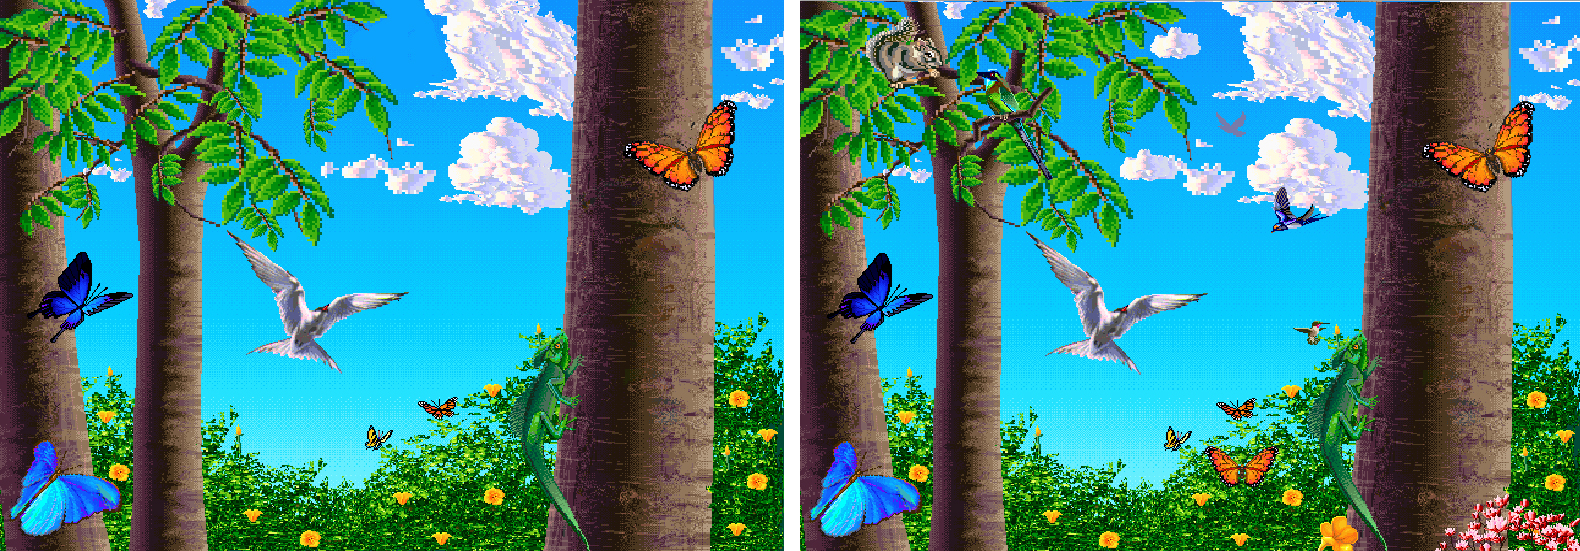 butterflies 2x